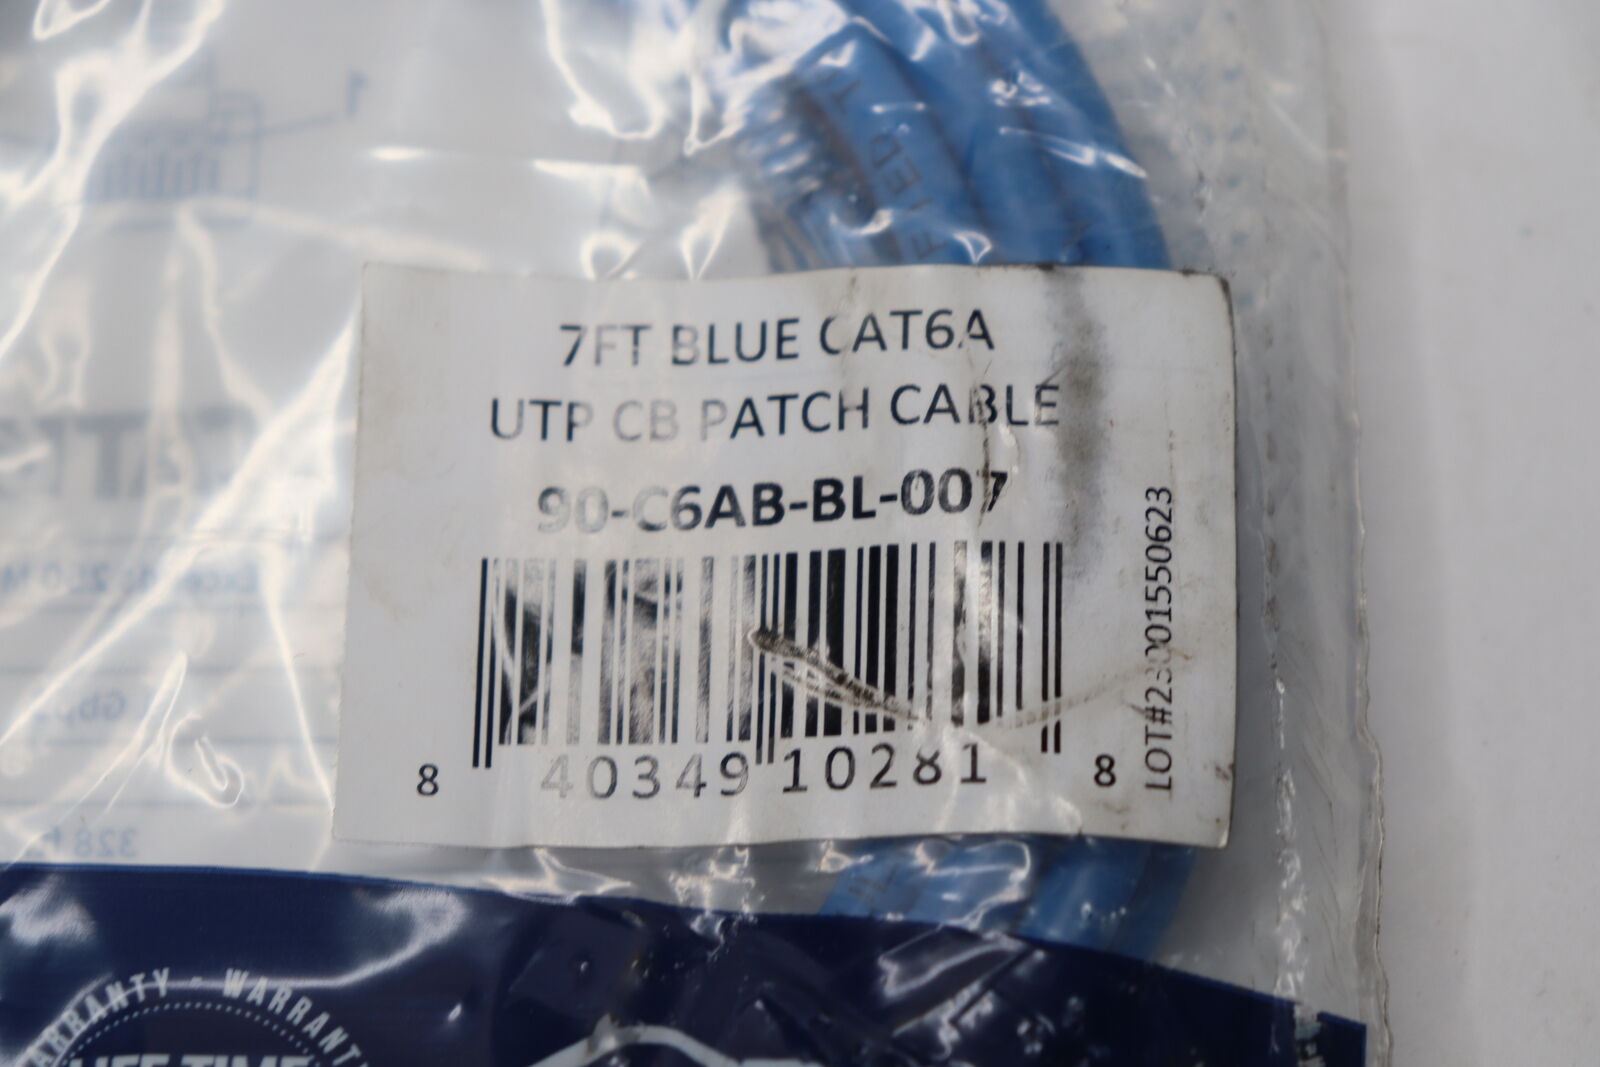 Weltron UTP CB Patch Cable Cat6a Blue 7' 90-C6AB-7BL